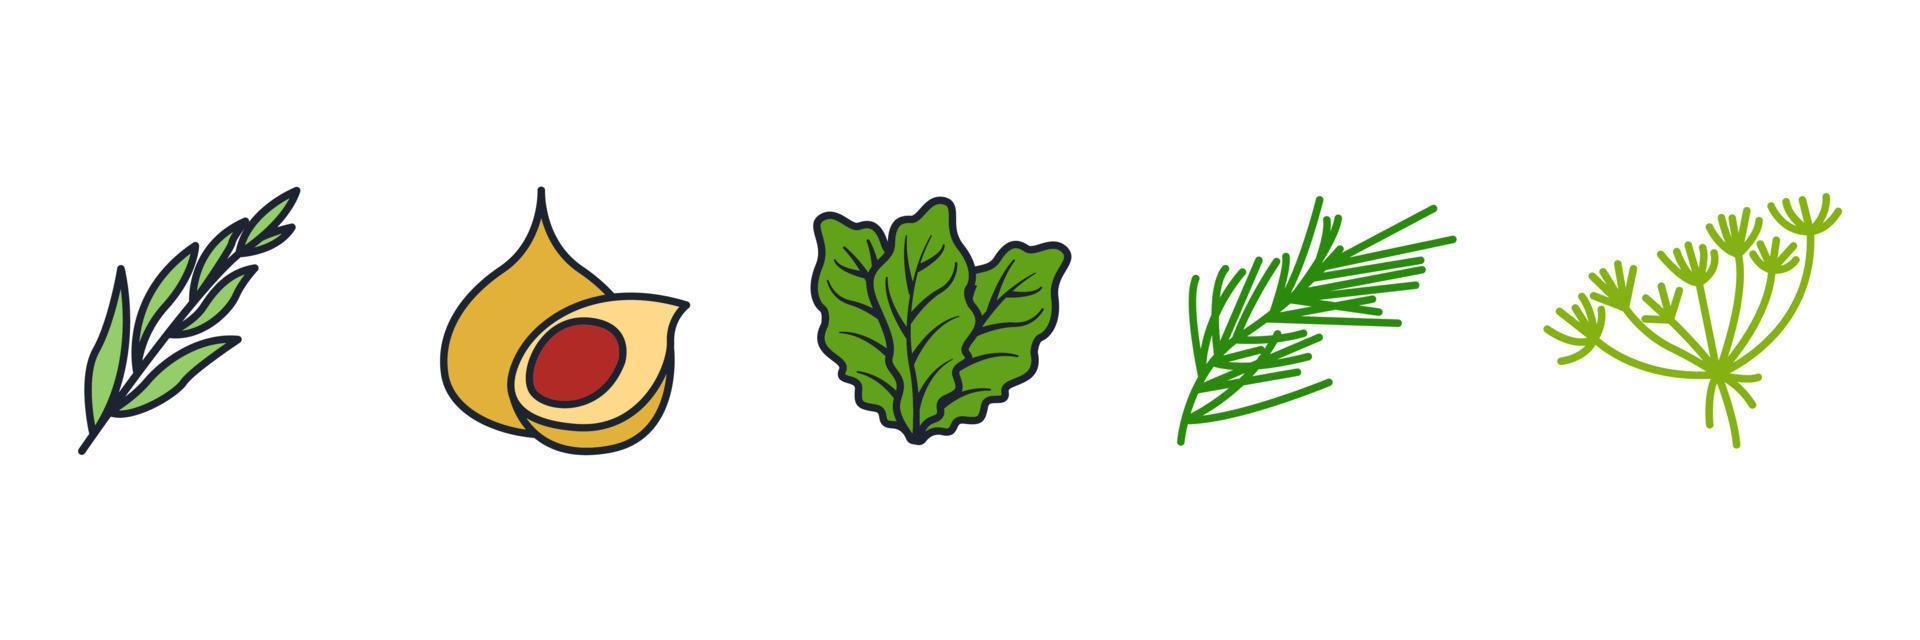 les éléments d'épices, de condiments et d'herbes définissent le modèle de symbole d'icône pour l'illustration vectorielle du logo de la collection de conception graphique et web vecteur